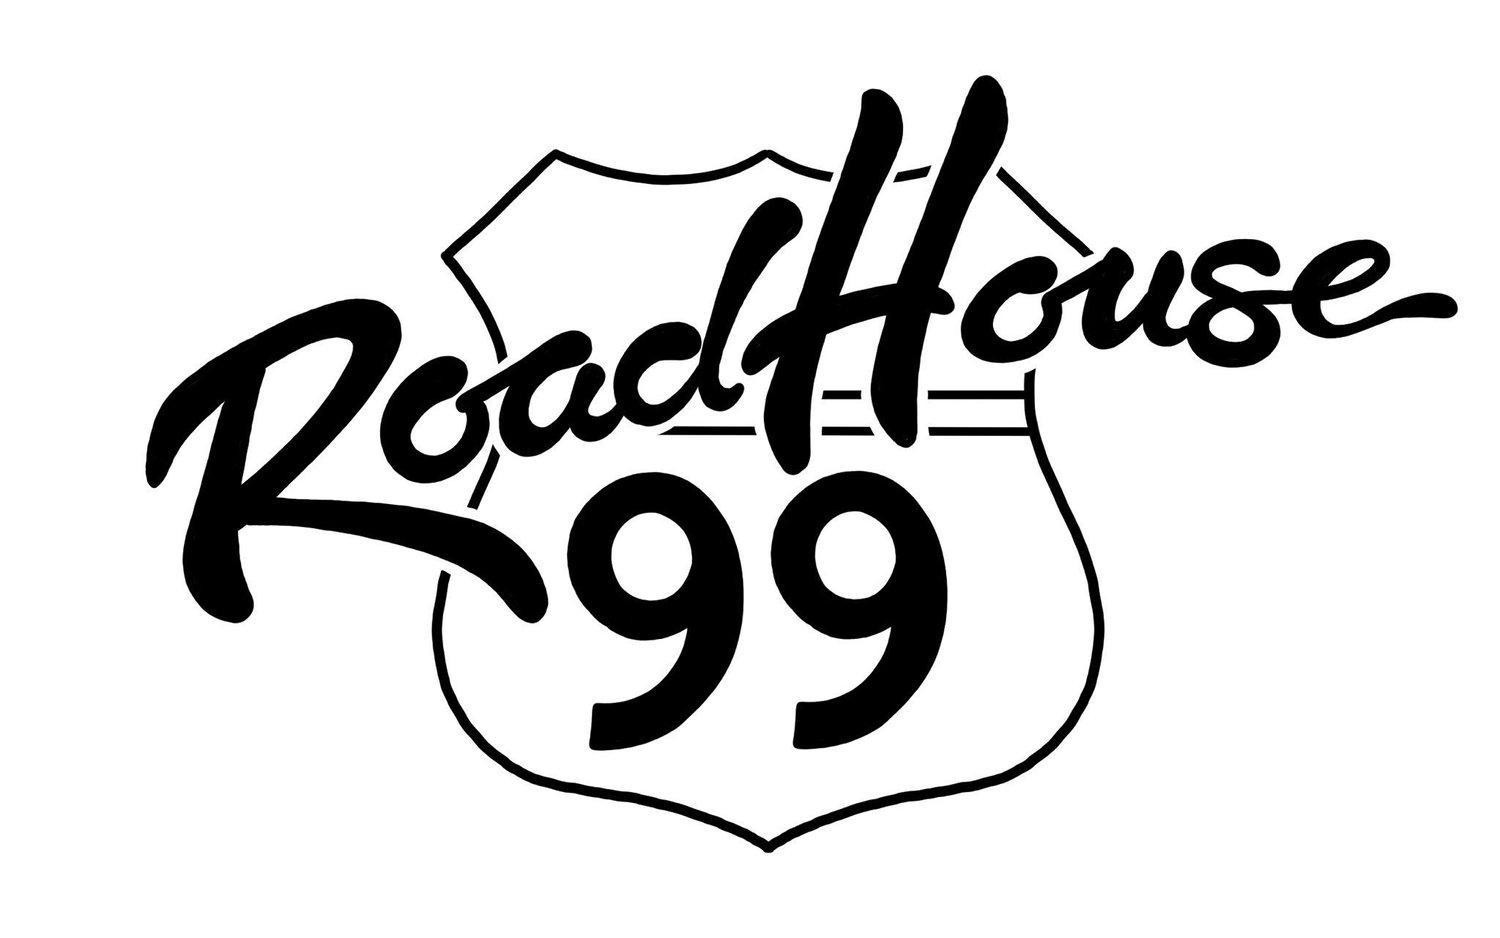 Roadhouse 99